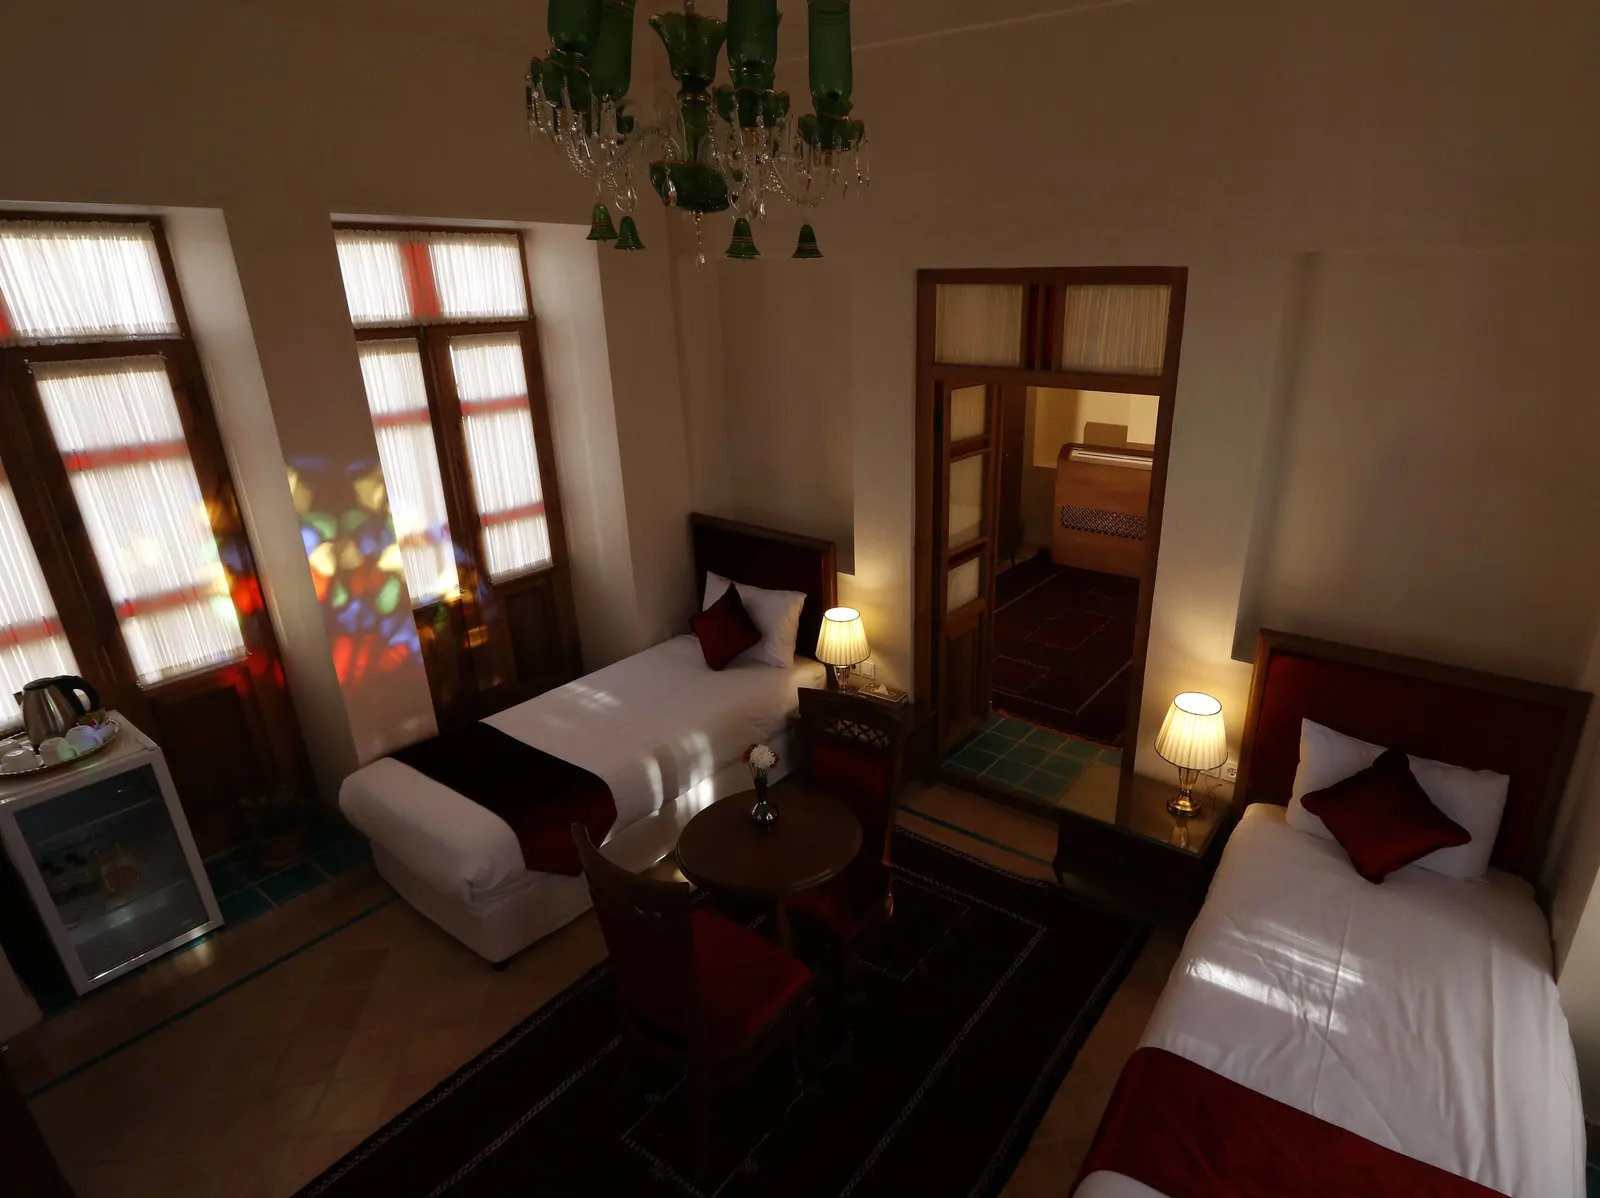 هتل سنتی عمارت ماندگار(114 _ خانواده)